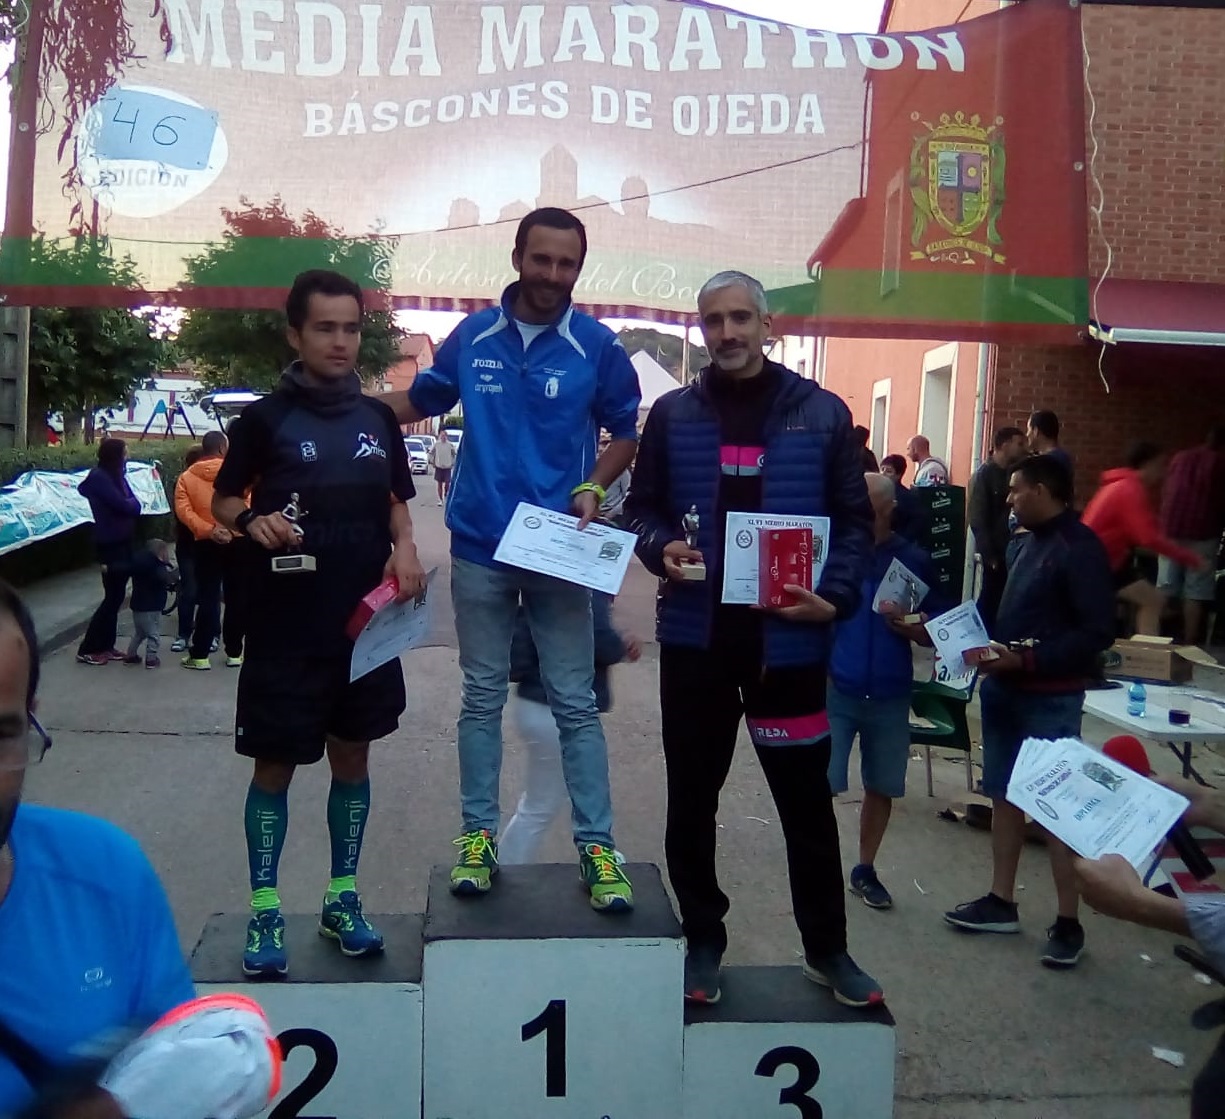 46 Media Maratón Báscones de Ojeda